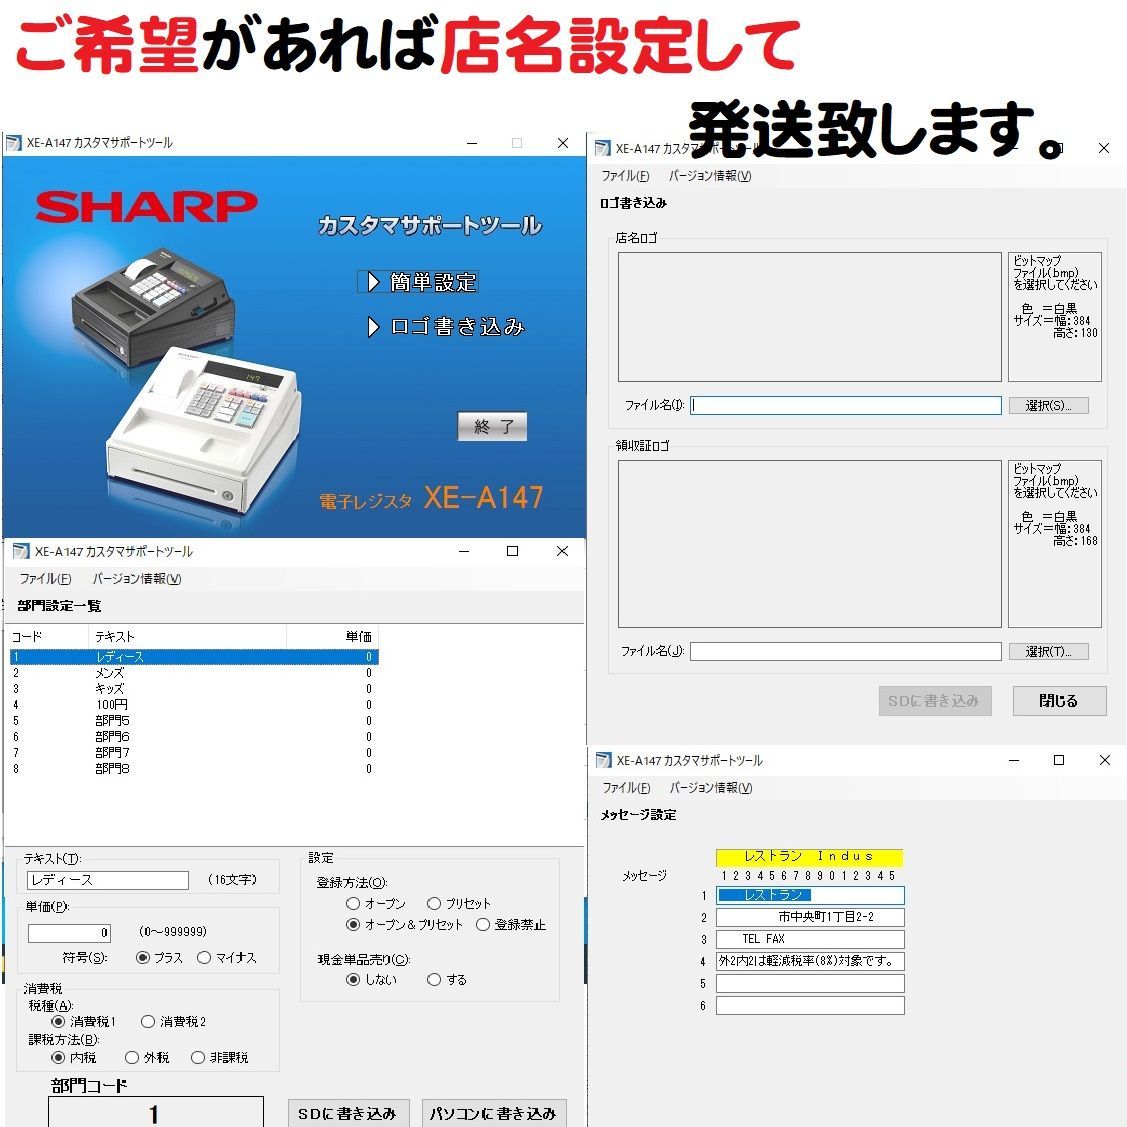 限定特価 SHARP レジスター XE-A147 PC連携 店名設定無料 その他